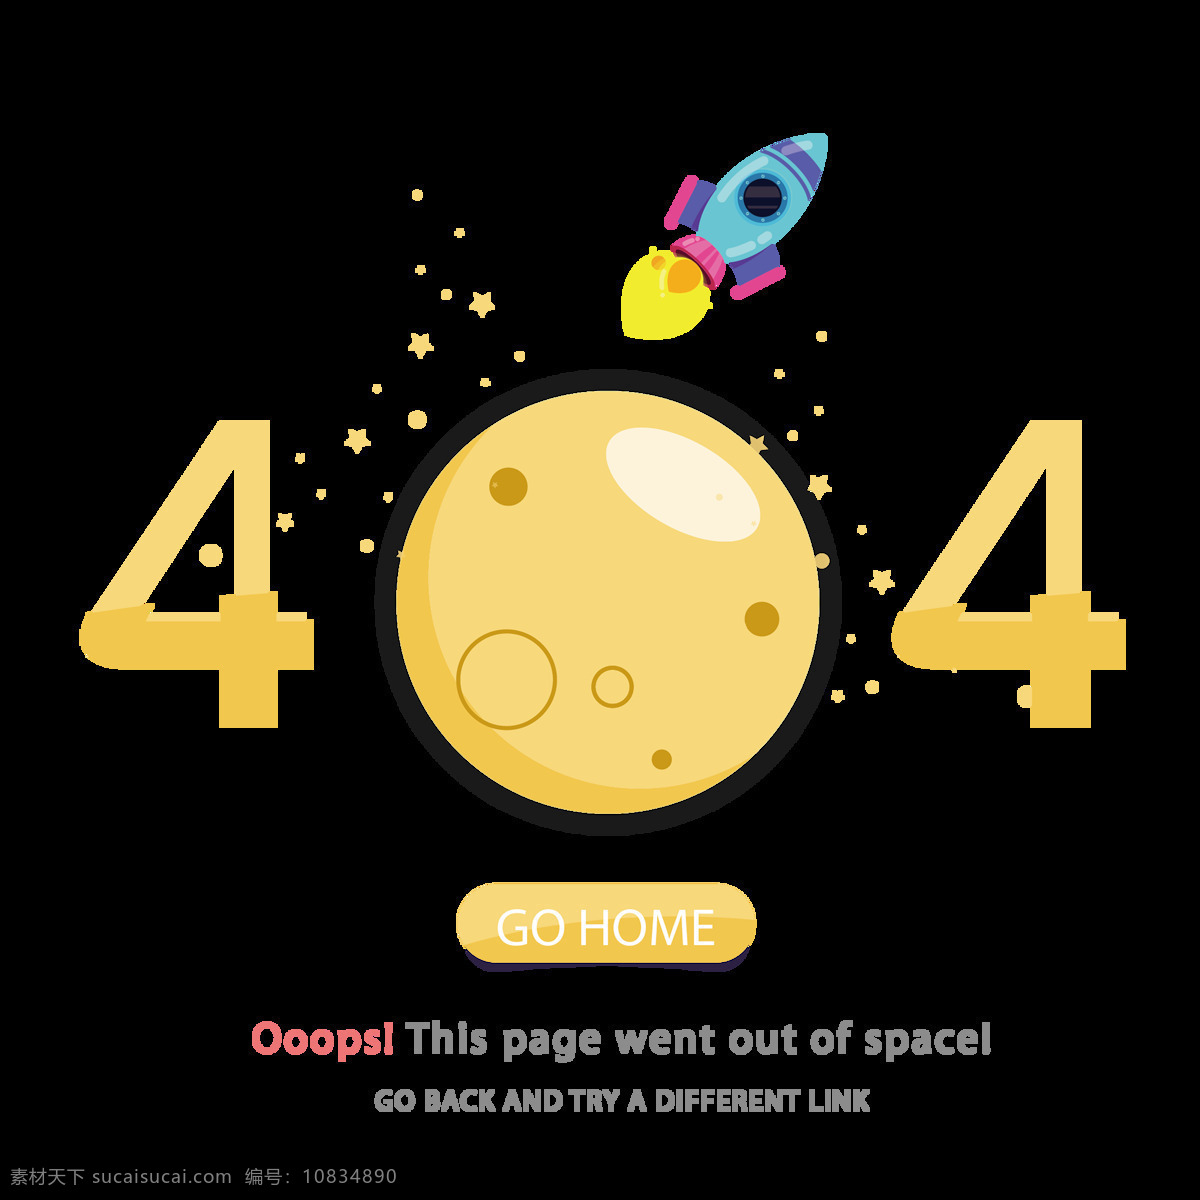 报 错 界面 主题 错误页 浏览器 合集 返航 星球404 网页404 缺失页 表情线性图标 404sorry 空状态 报错 返回 app